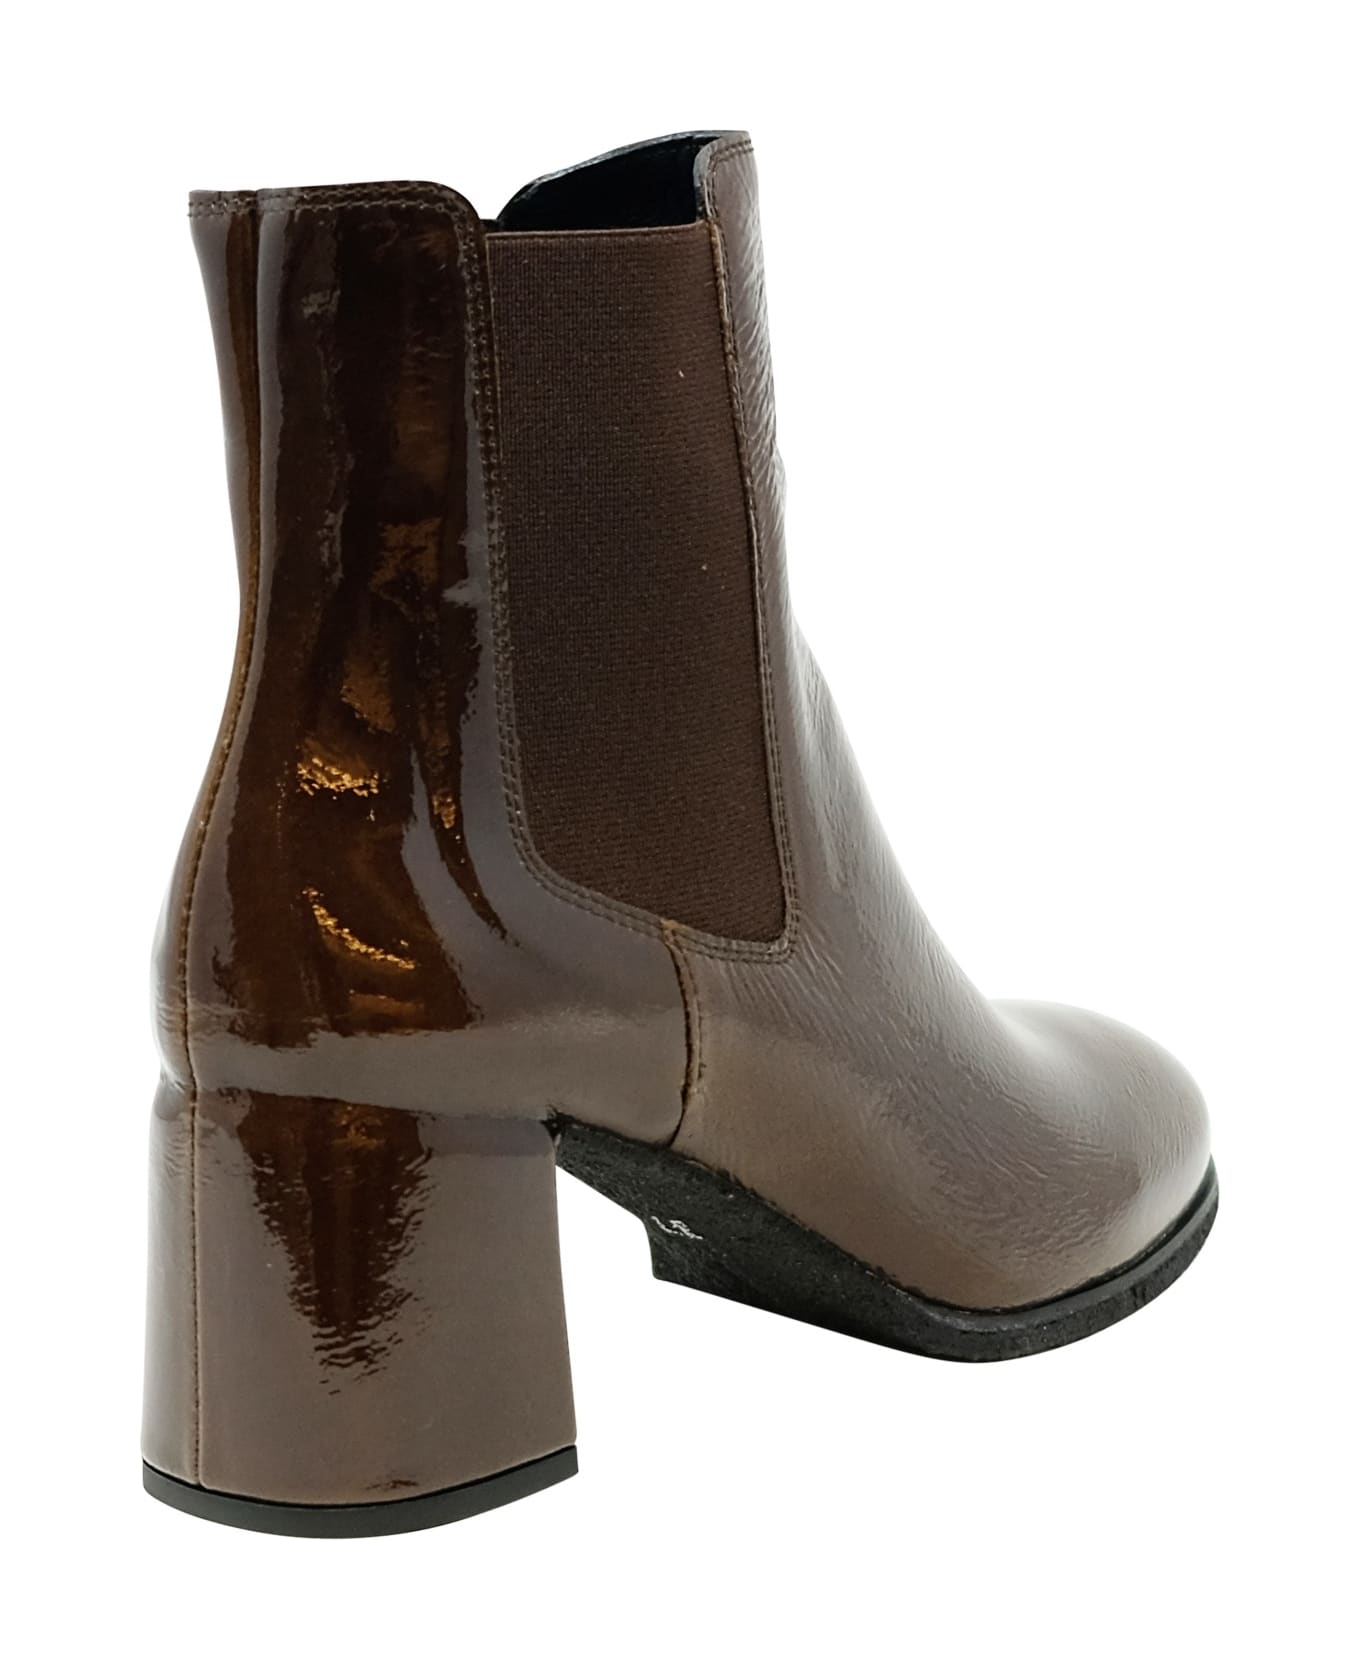 Del Carlo Roberto Del Carlo Patent Leather Holly Boots - DARK BROWN